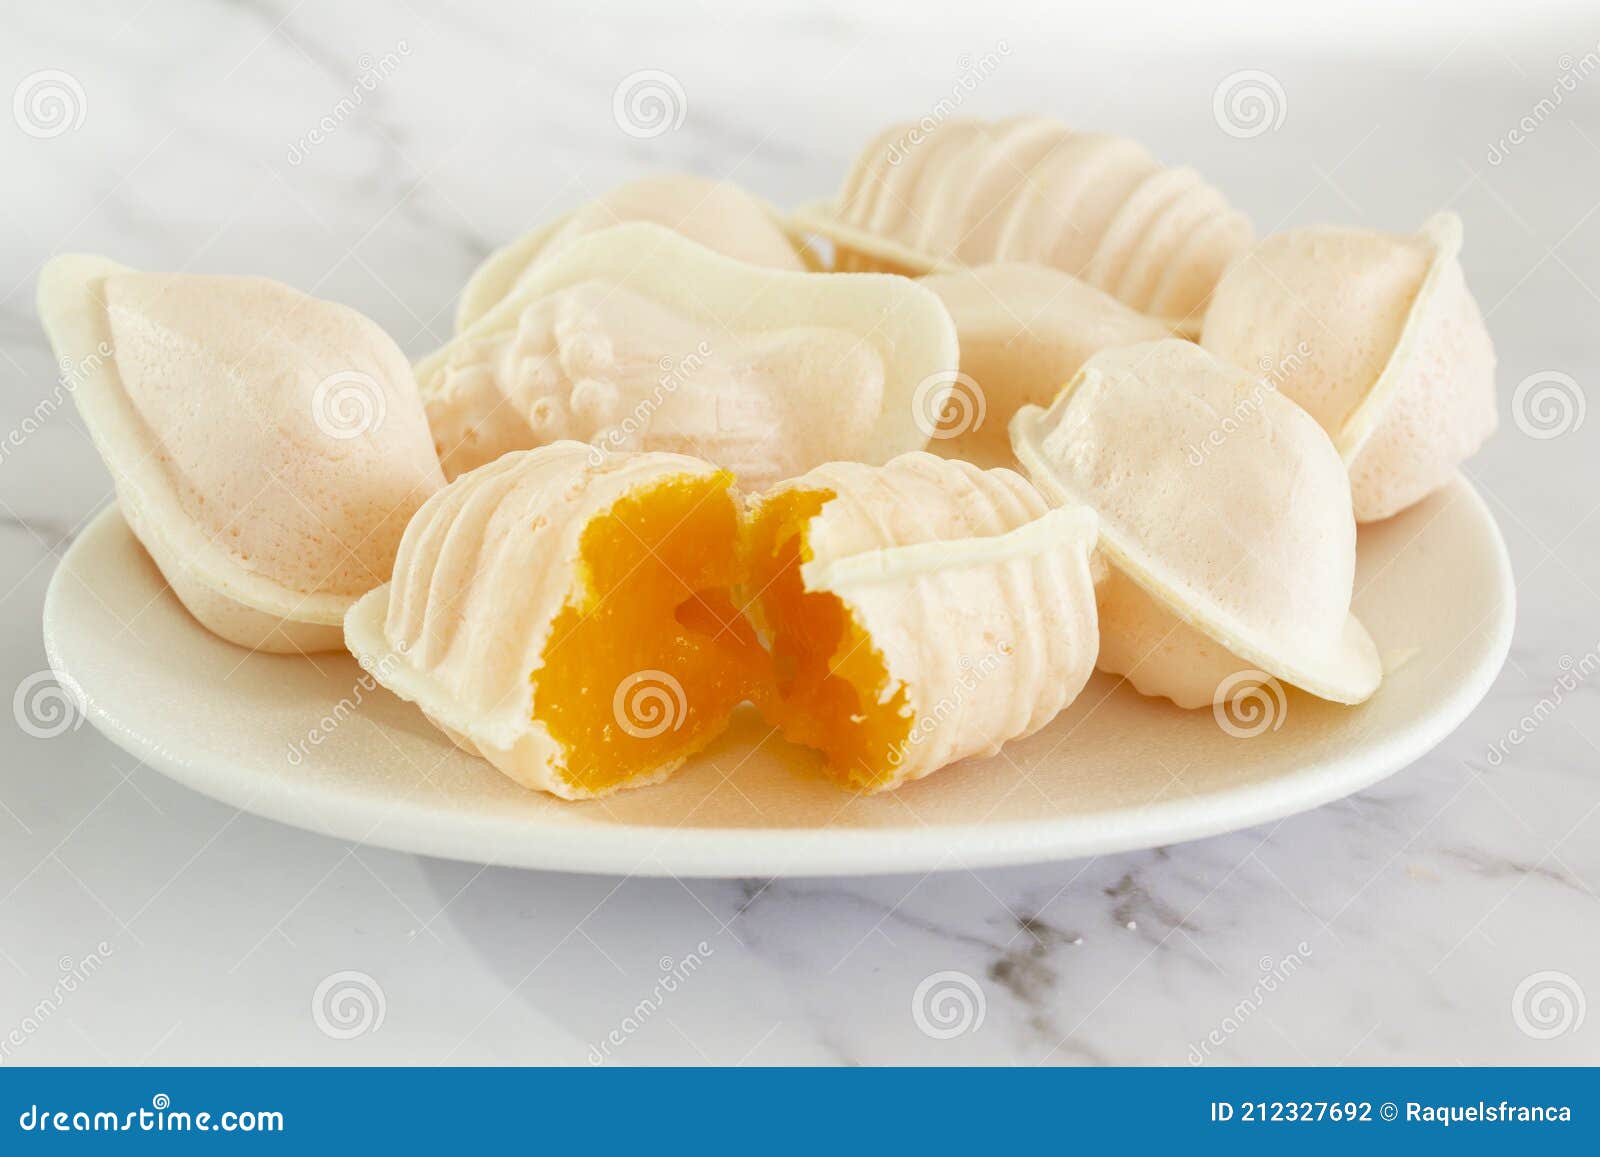 typical portuguese egg yolk sweets called ovos moles de aveiro